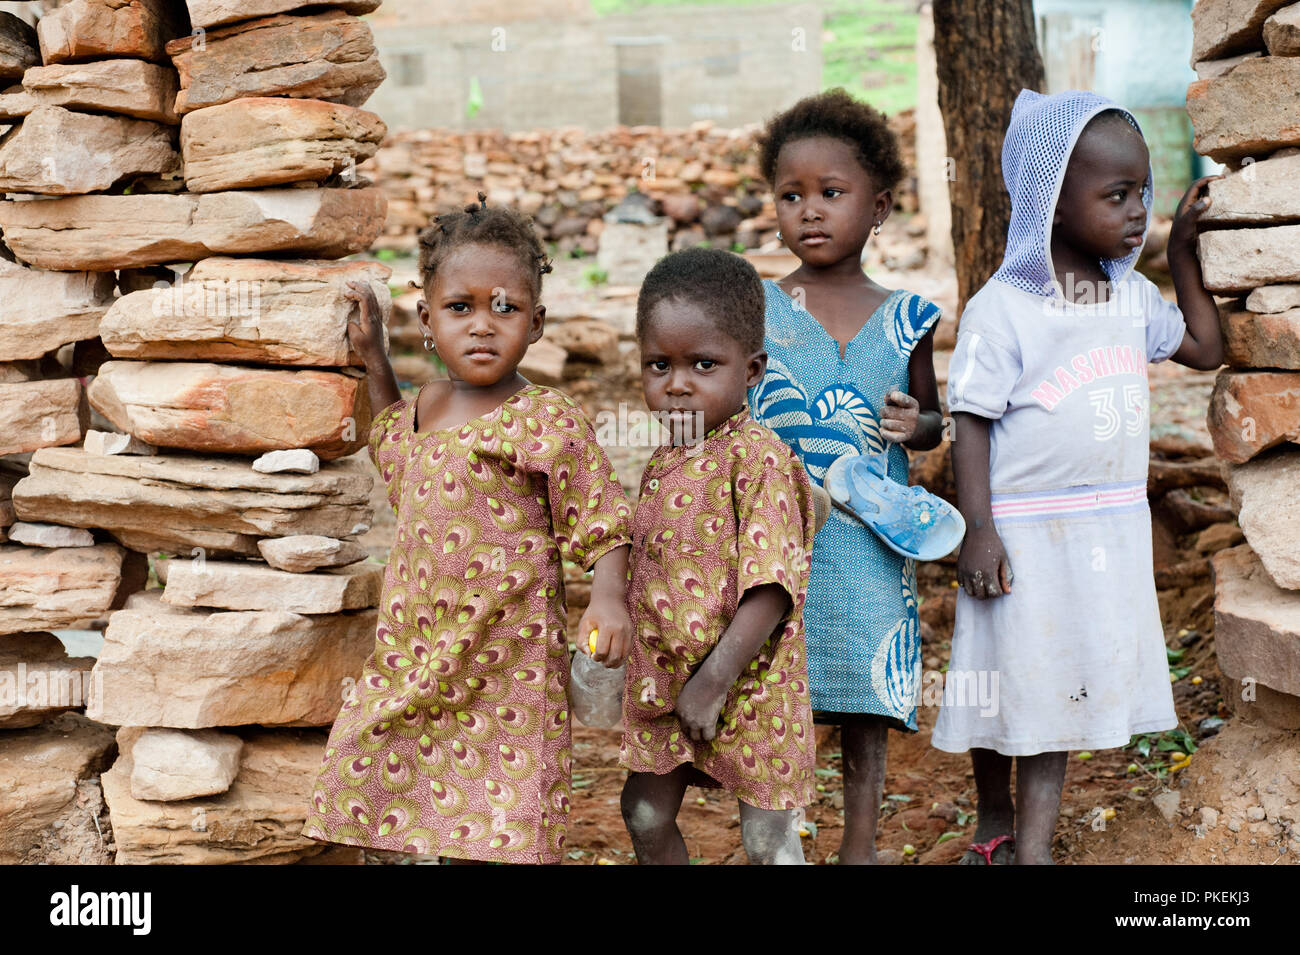 Mali, Afrika - ca. August 2009 - schwarze afrikanische Kinder leben in einer ländlichen Gegend in der Nähe von Bamako ernsthaft Kamera Stockfoto